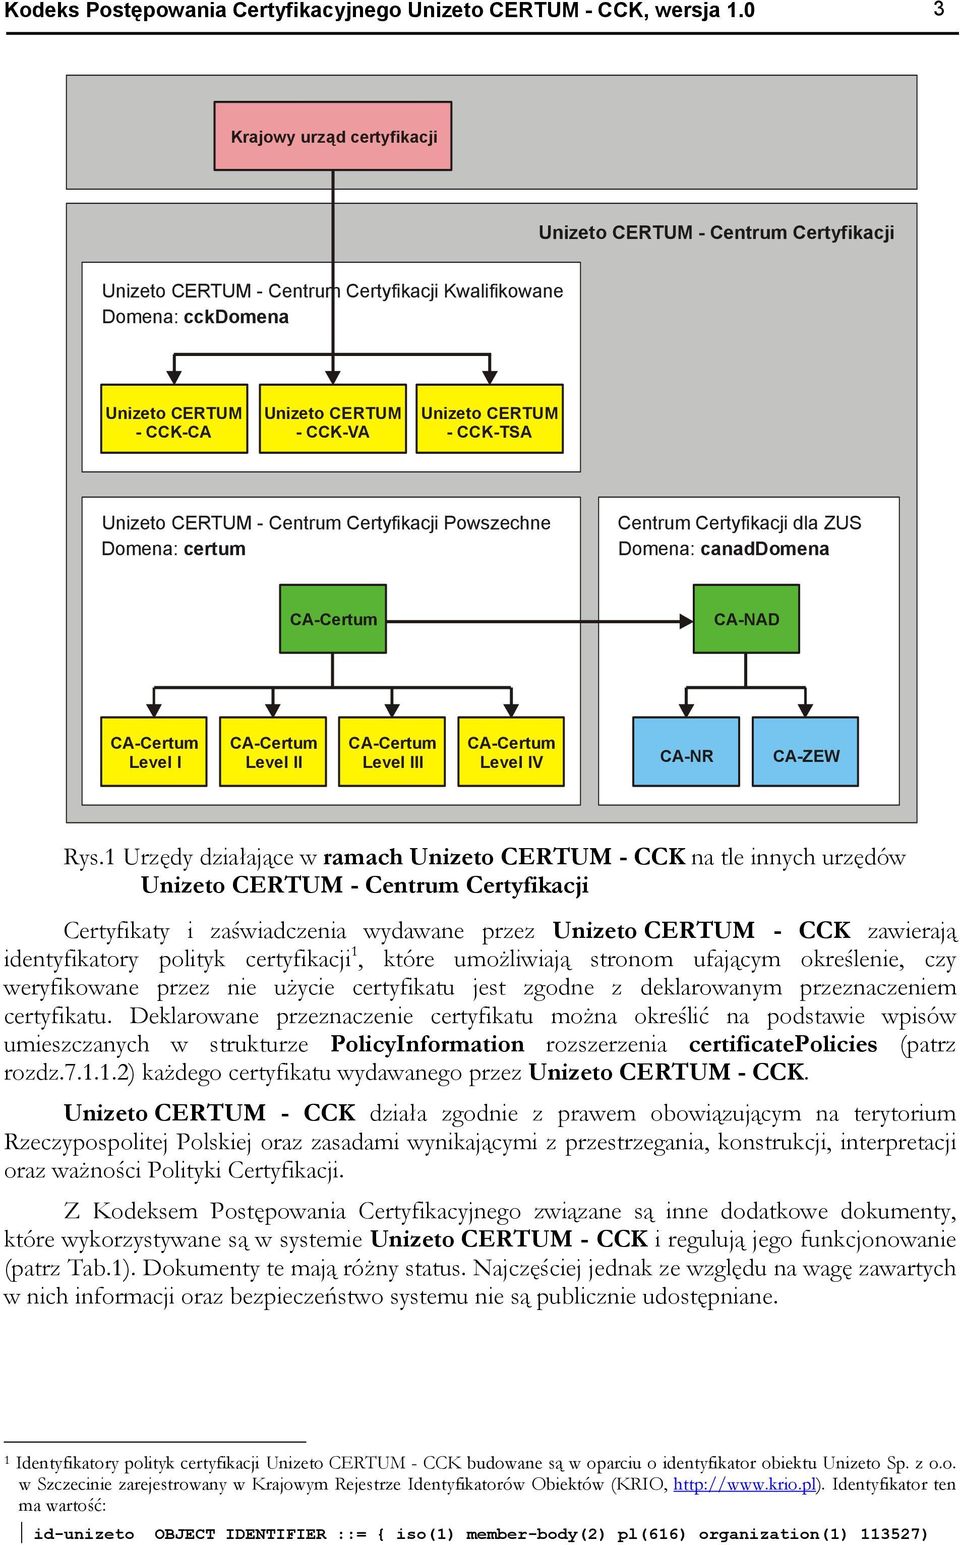 CERTUM - CCK-TSA Unizeto CERTUM - Centrum Certyfikacji Powszechne Domena: certum Centrum Certyfikacji dla ZUS Domena: canaddomena CA-Certum CA-NAD CA-Certum Level I CA-Certum Level II CA-Certum Level